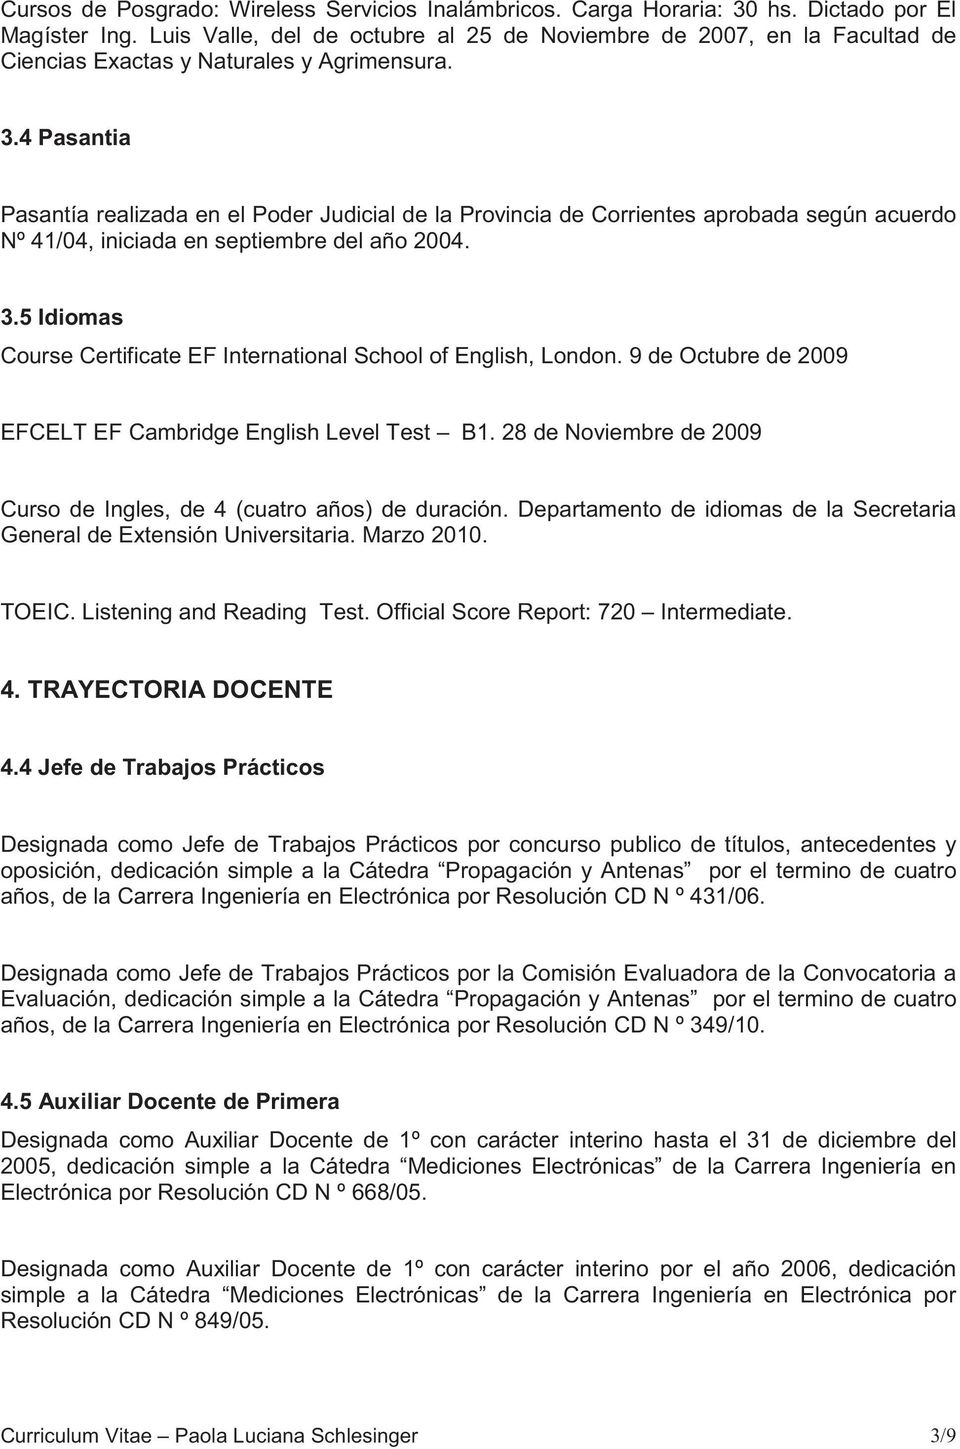 4 Pasantia Pasantía realizada en el Poder Judicial de la Provincia de Corrientes aprobada según acuerdo Nº 41/04, iniciada en septiembre del año 2004. 3.